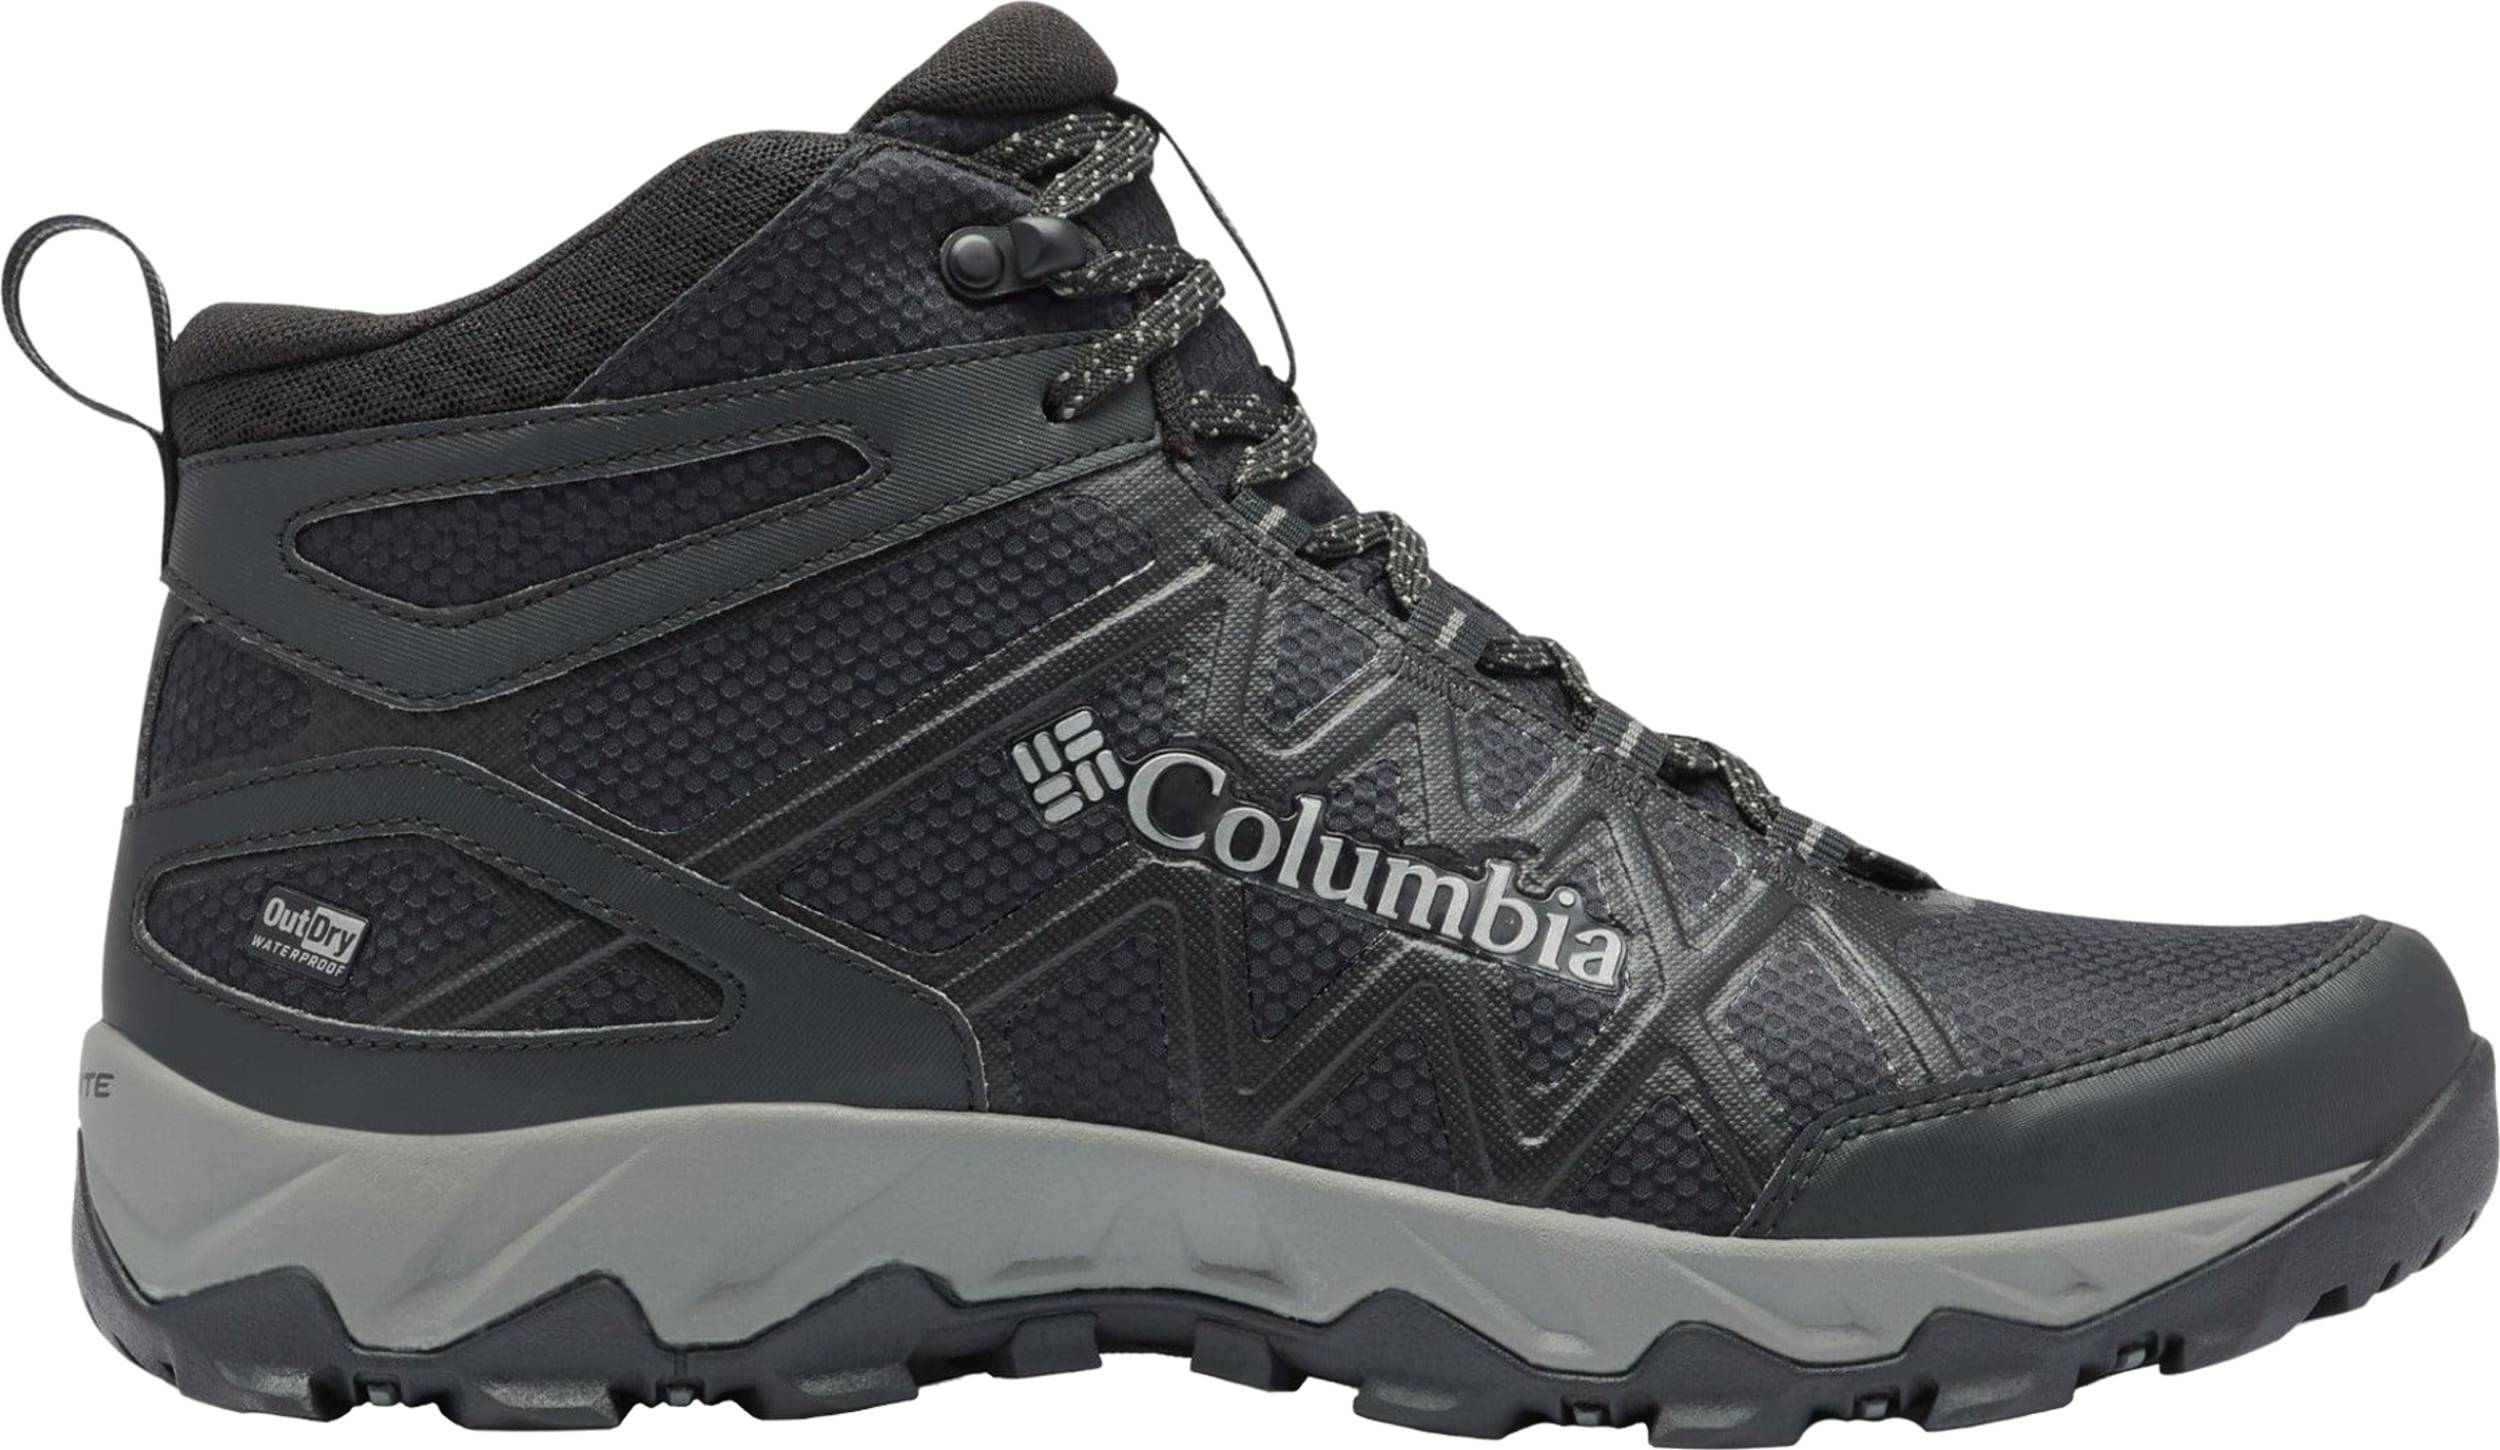 COLUMBIA Peakfreak X2 Mid Outdry Graphite/Blue 1865001053/ Schuhwerk Männer 